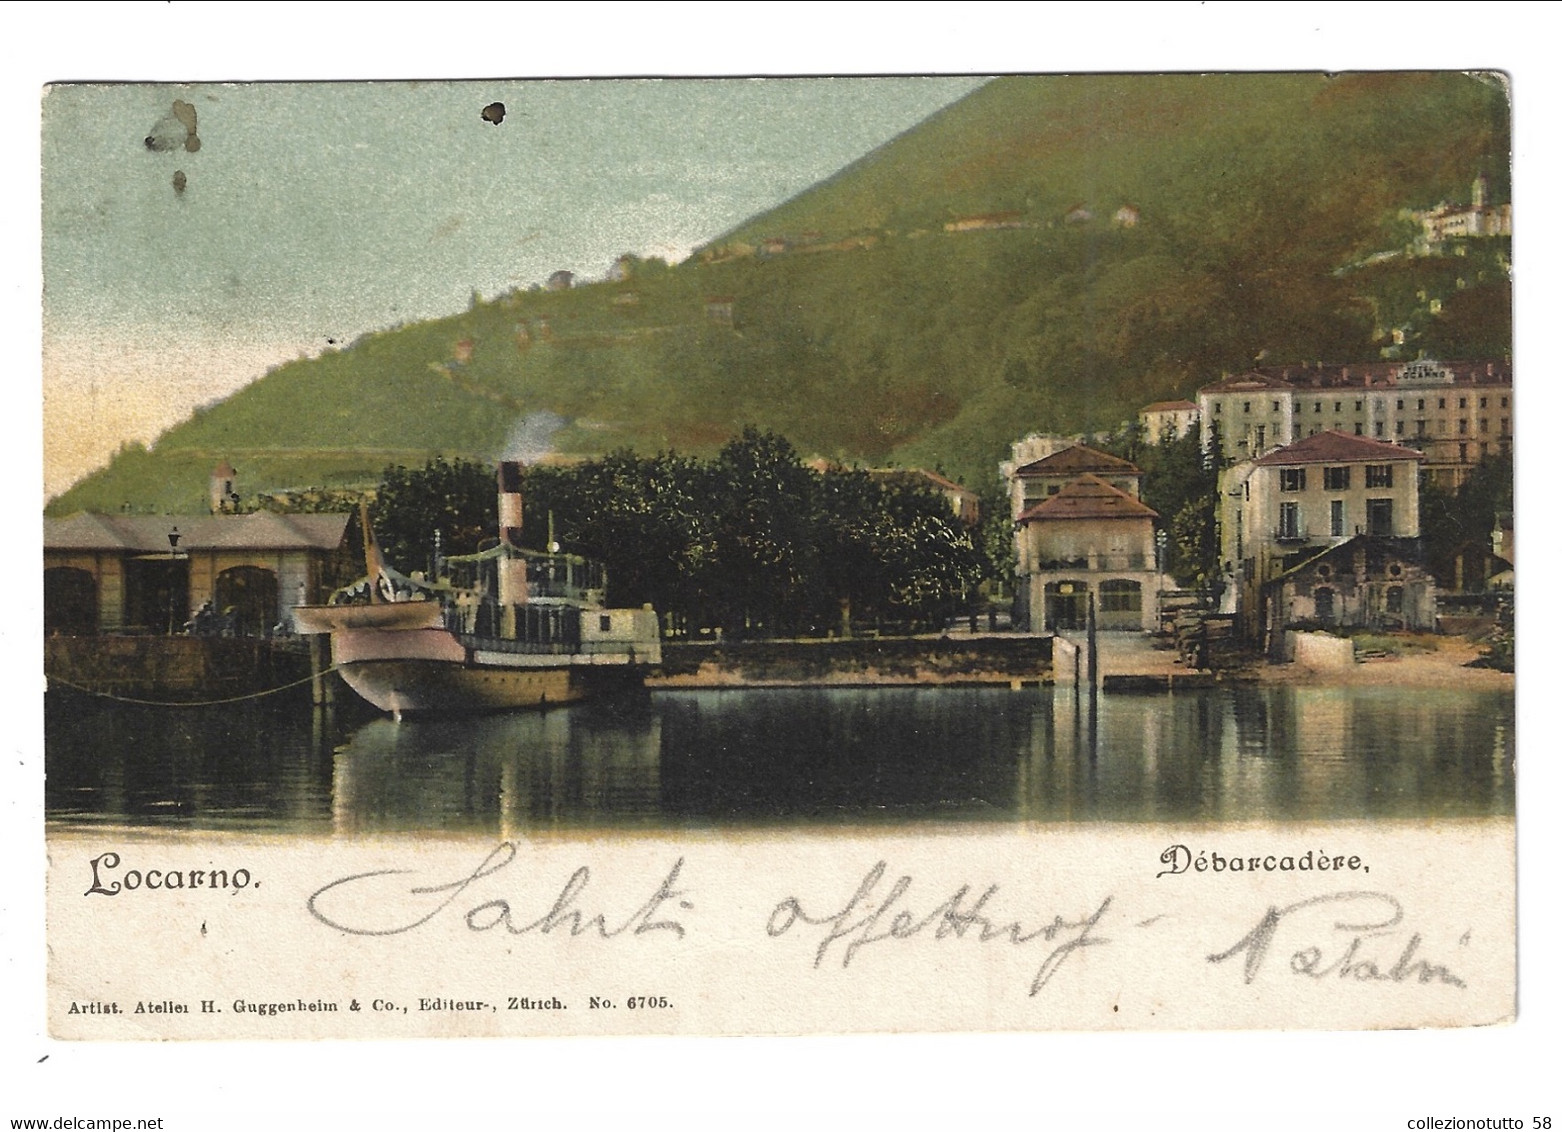 LOCARNO Porto. Imbarcadero "Debarcadèere" Ed. H.Guggenheim & Co. Zurich - Locarno